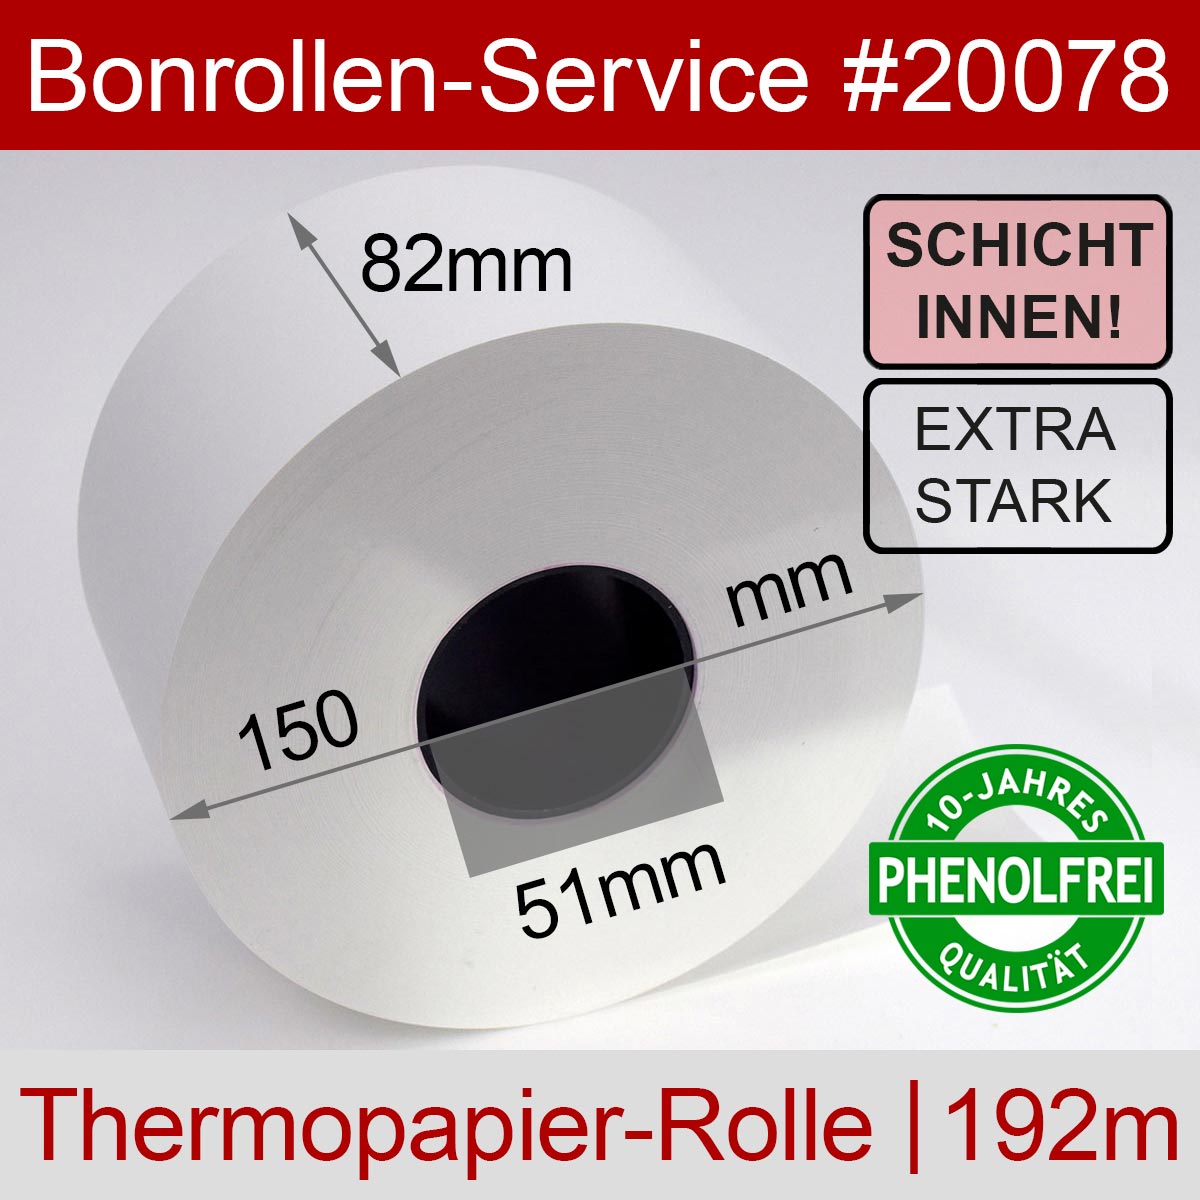 PhenolfreieAutomatenrollen 82 / 150 / 51 weiß mit extra-starkem Thermopapier (Schicht innen) - Detailansicht